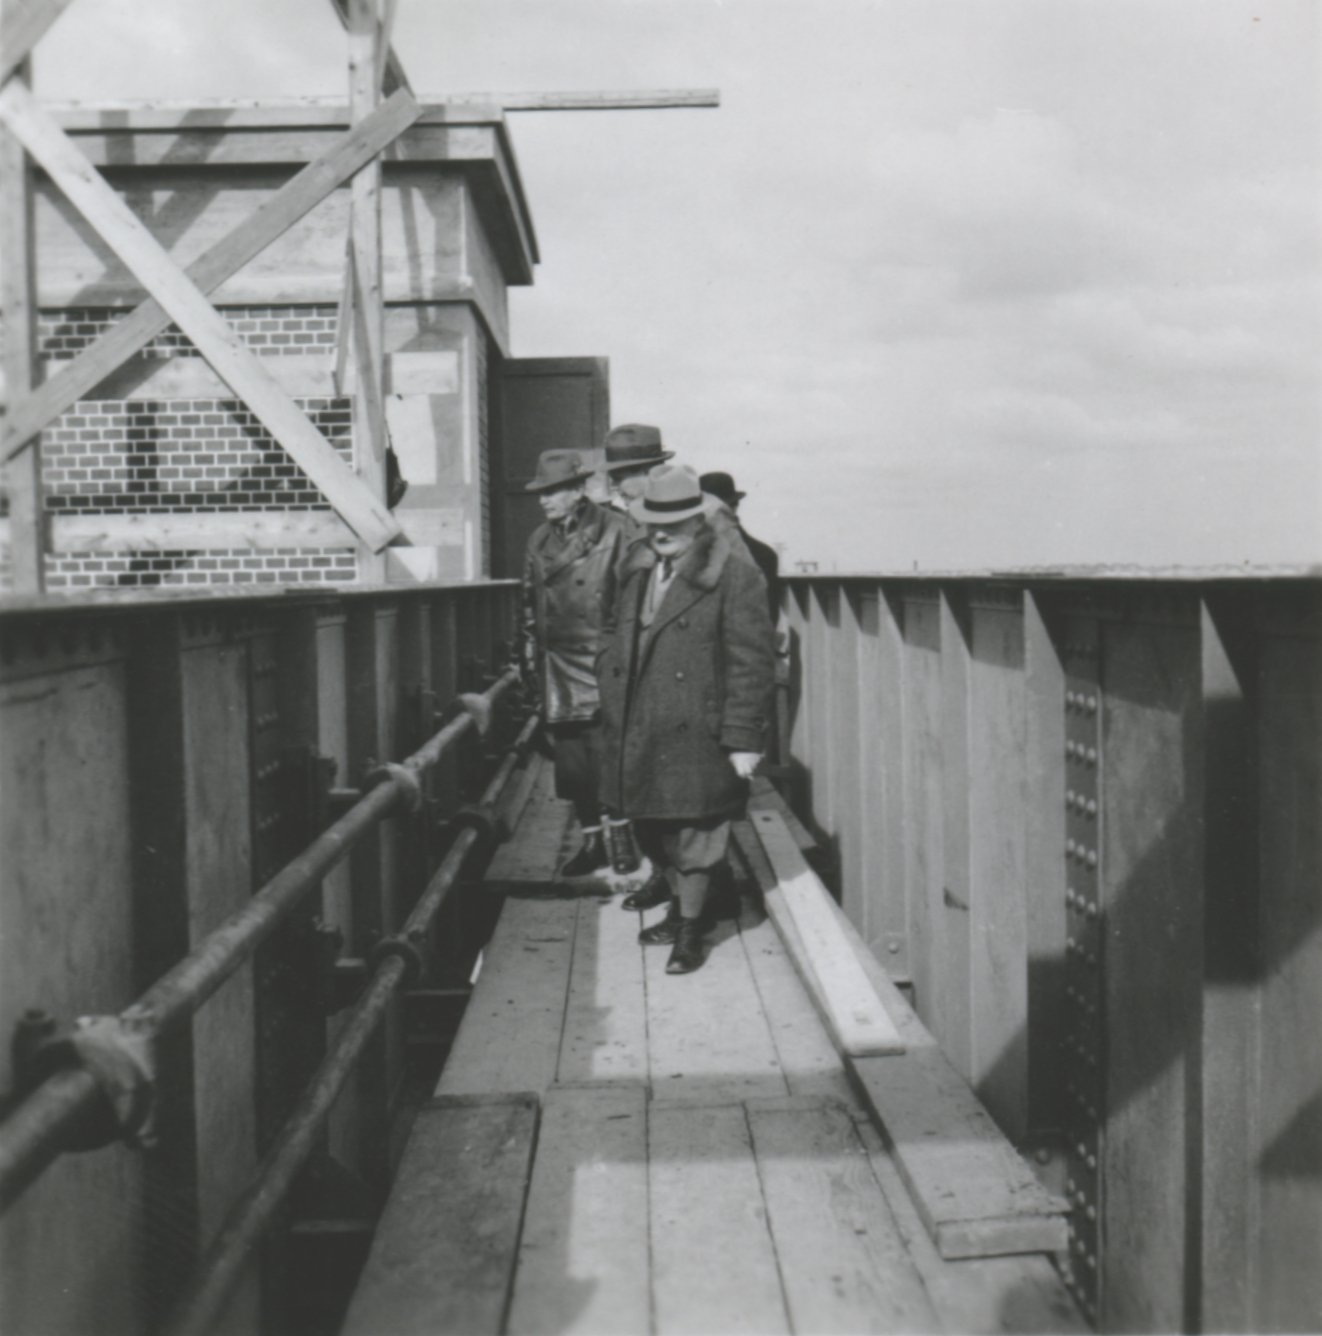 Kezelő híd - Gépkamra falazat hézagolása, 1939. október 31. (Magyar Környezetvédelmi és Vízügyi Múzeum - Duna Múzeum CC BY-NC-SA)